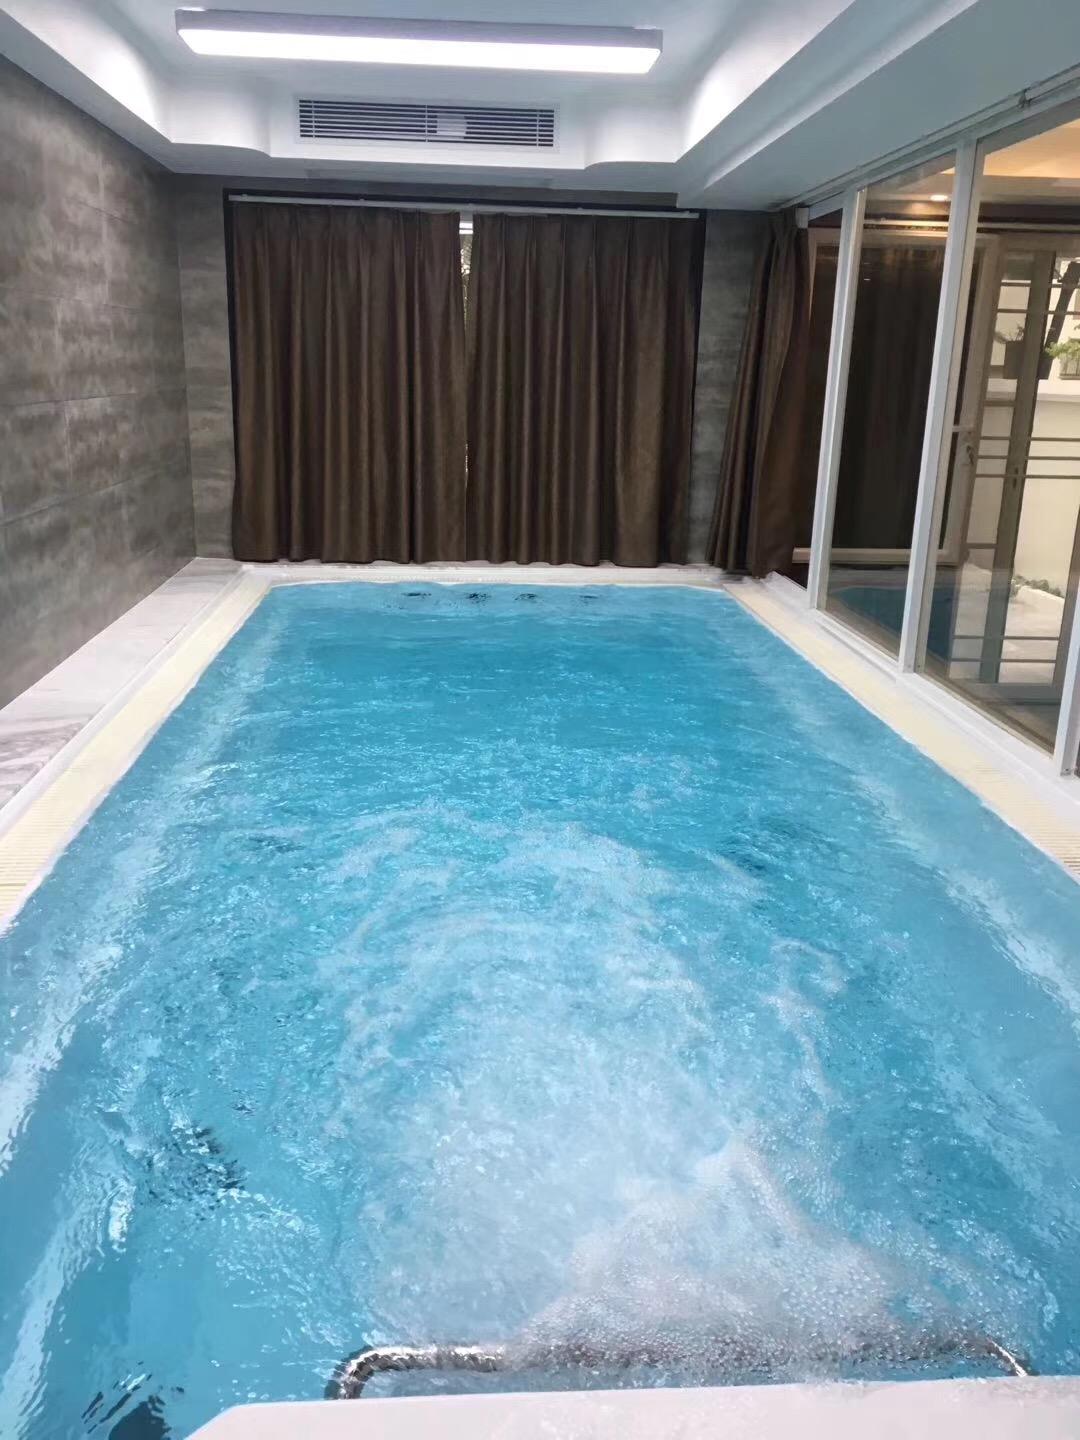 别墅泳池案例|别墅游泳池解决方案 - 广州夏泳泳池设备有限公司